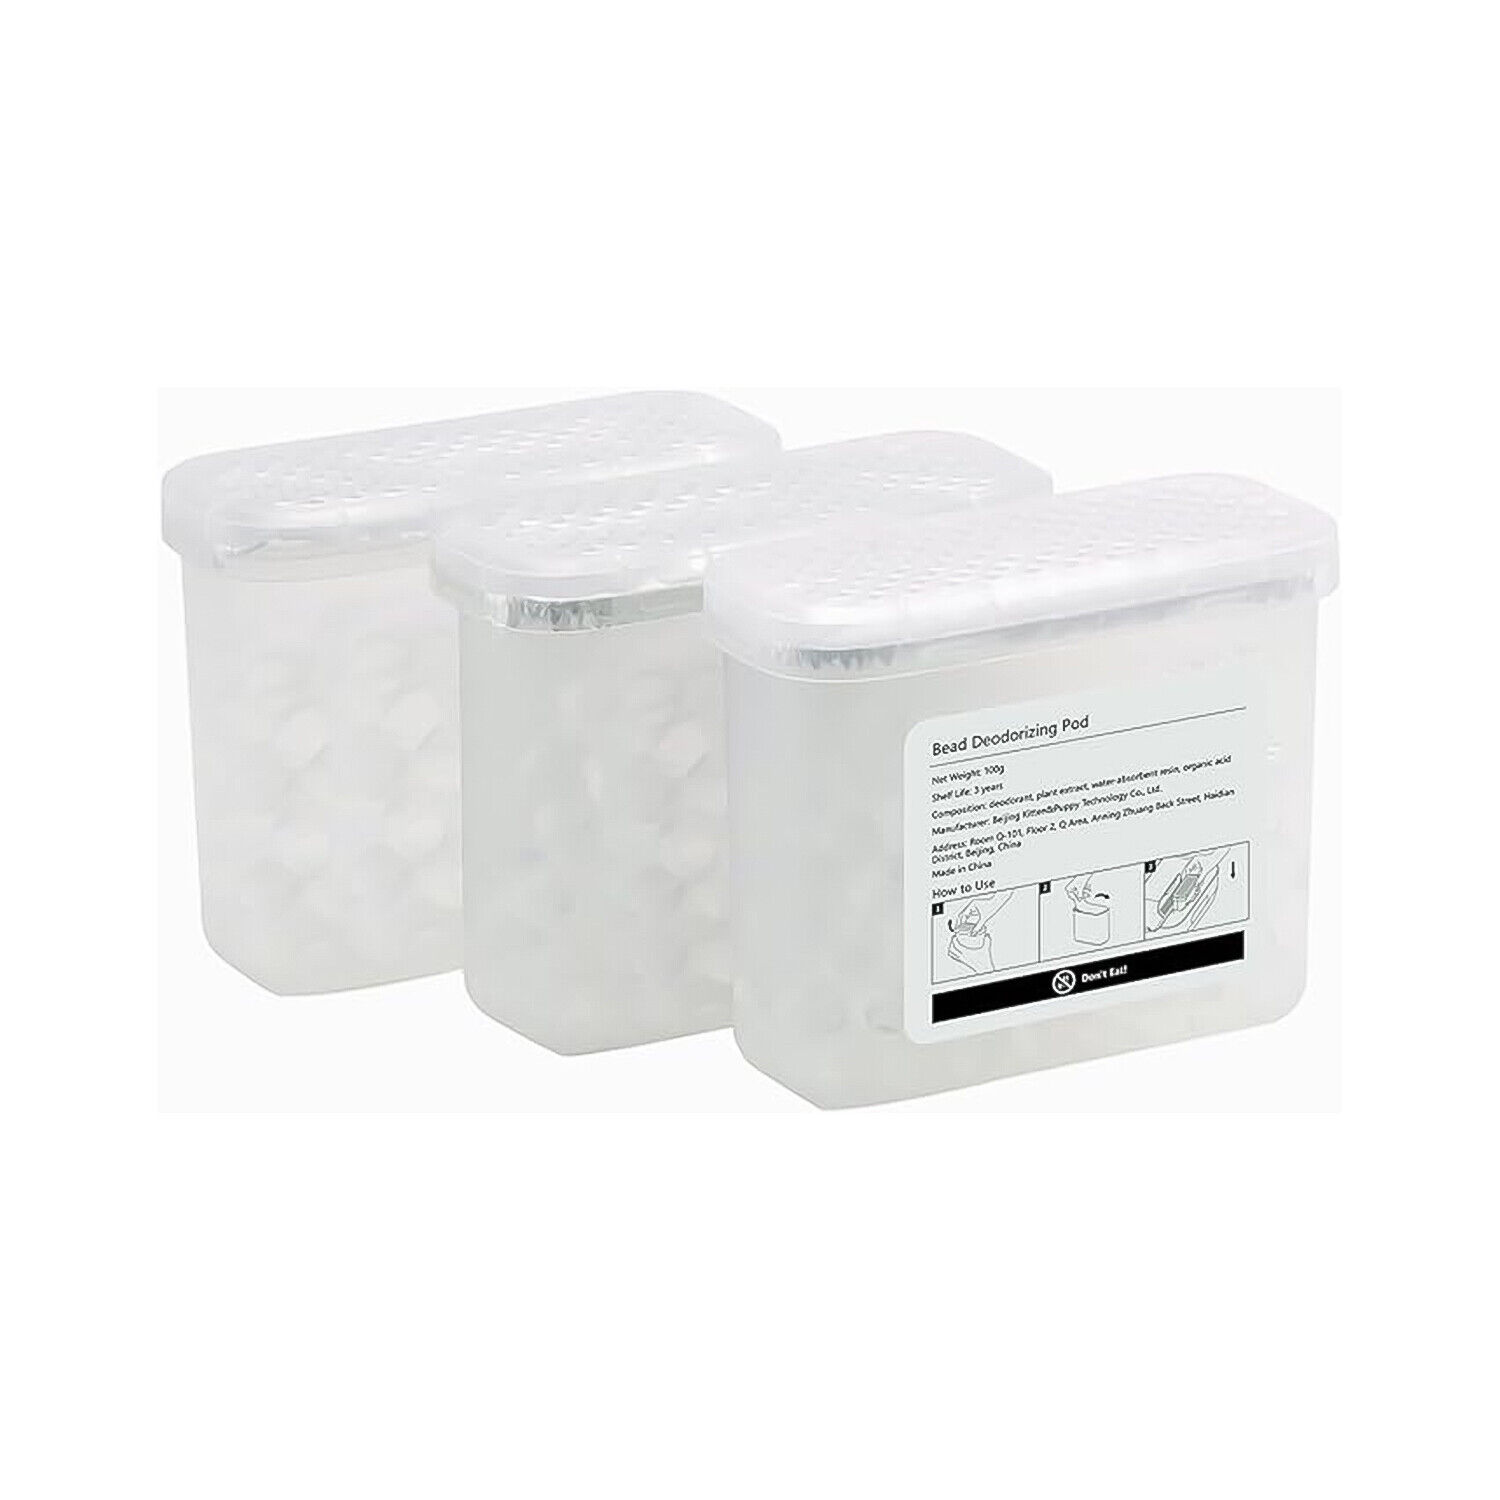 PAWBBY P1 Ultra Desodorierungskapsel für Boxen) Katzentoilette Selbstreinigende (3 Desodorierungsbox